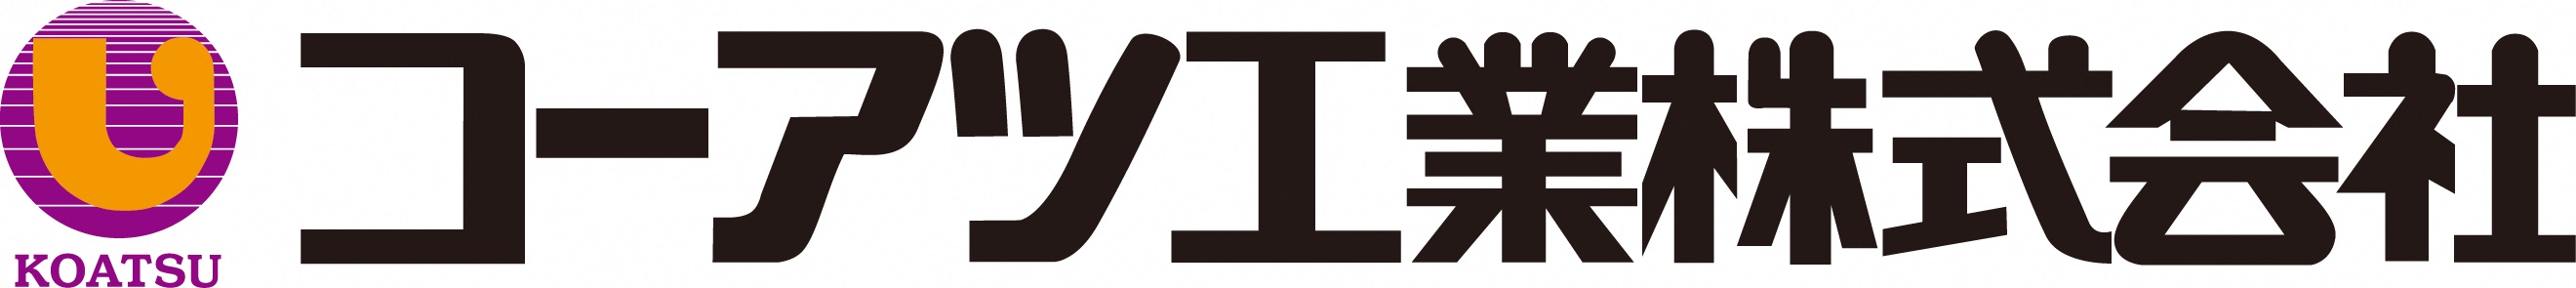 コーアツ工業株式会社のロゴ画像